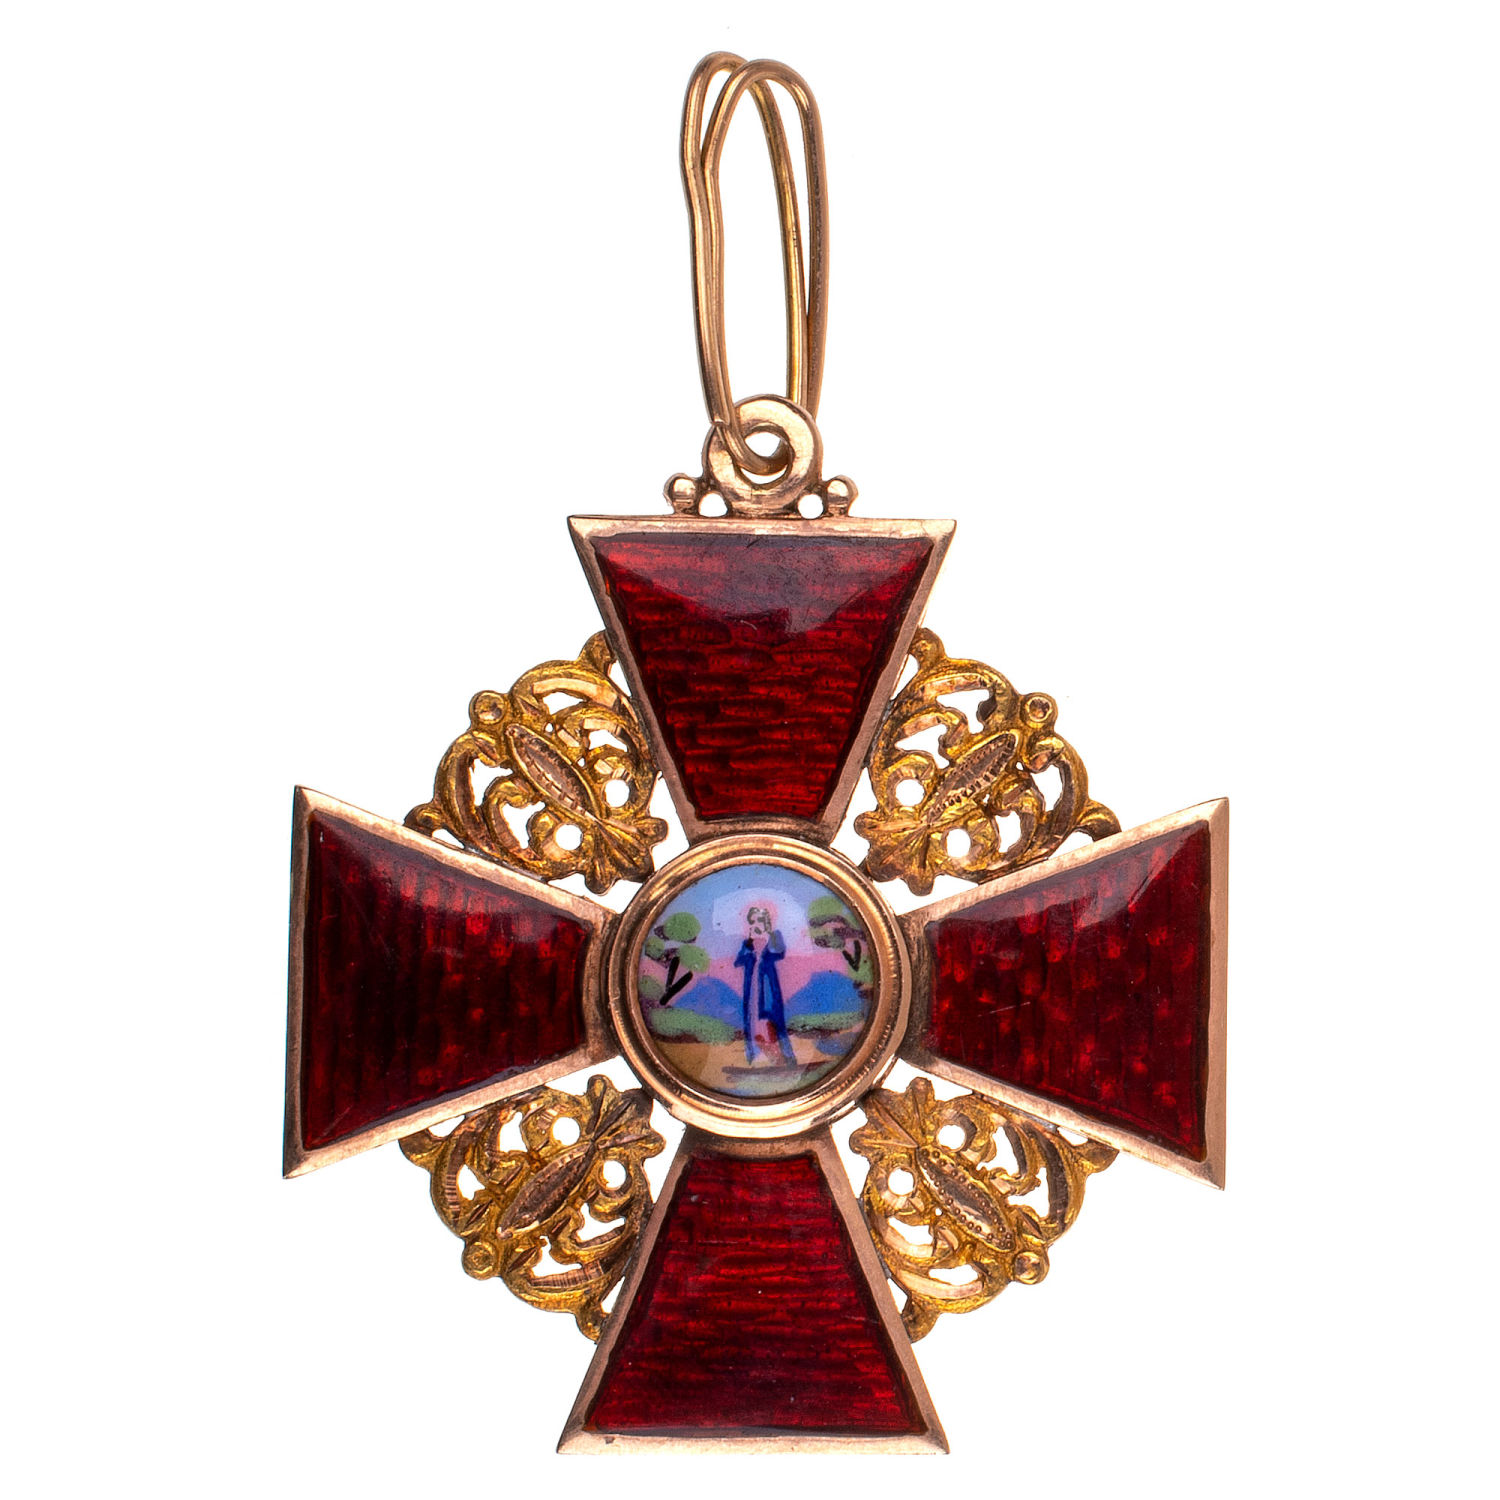 Знак ордена Св. Анны 3 ст, 1874 - 1882 гг. Капитульный. Золото.